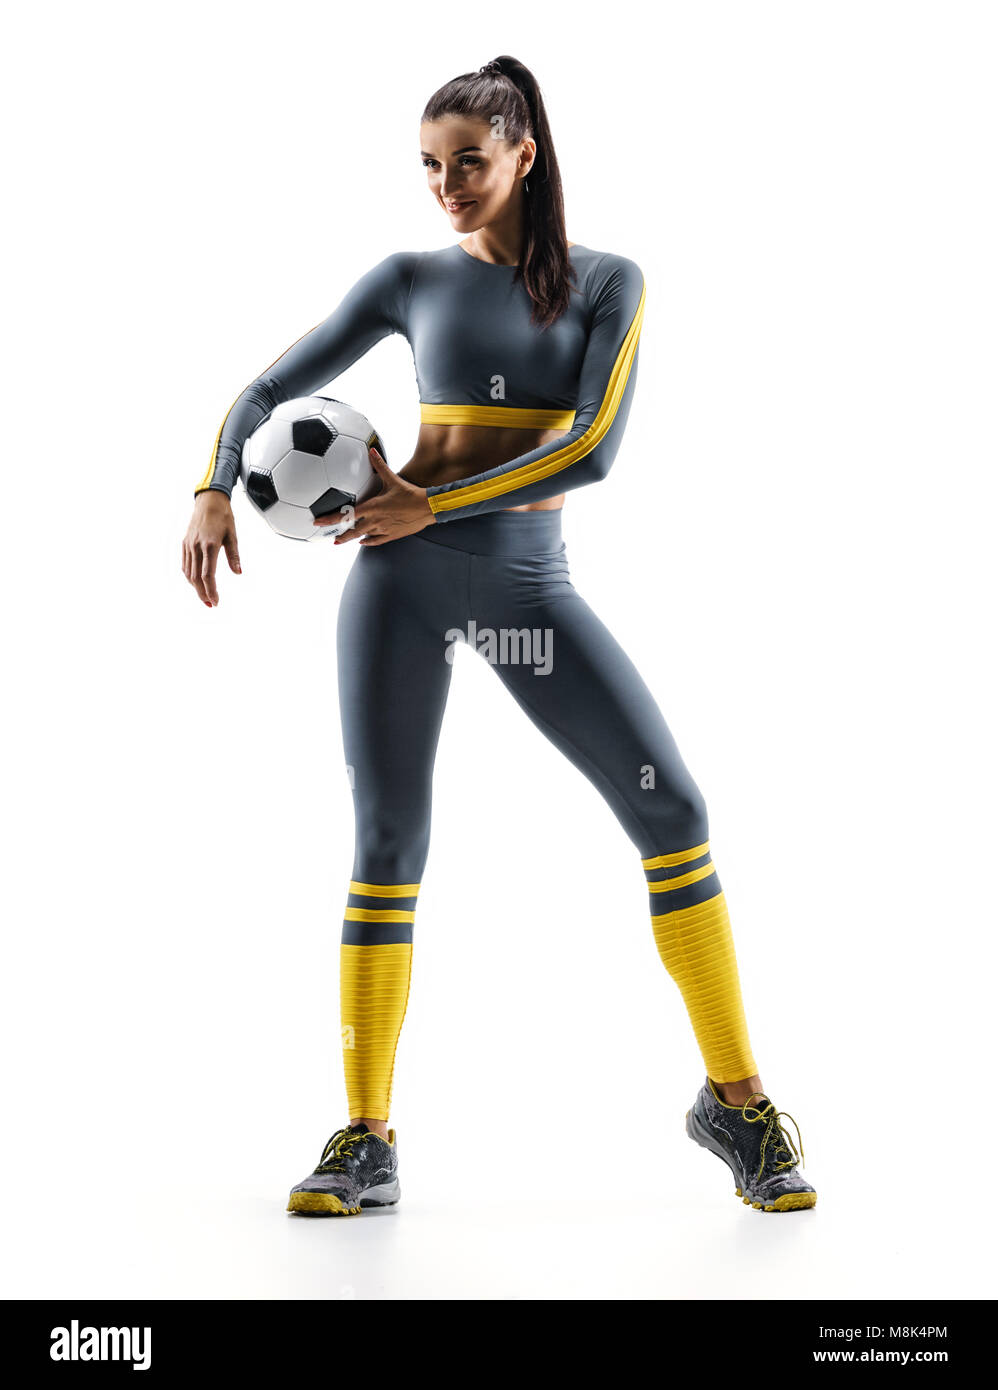 Prêt à jouer. Joueur de foot woman standing in silhouette isolé sur fond blanc. Sport et mode de vie sain Banque D'Images